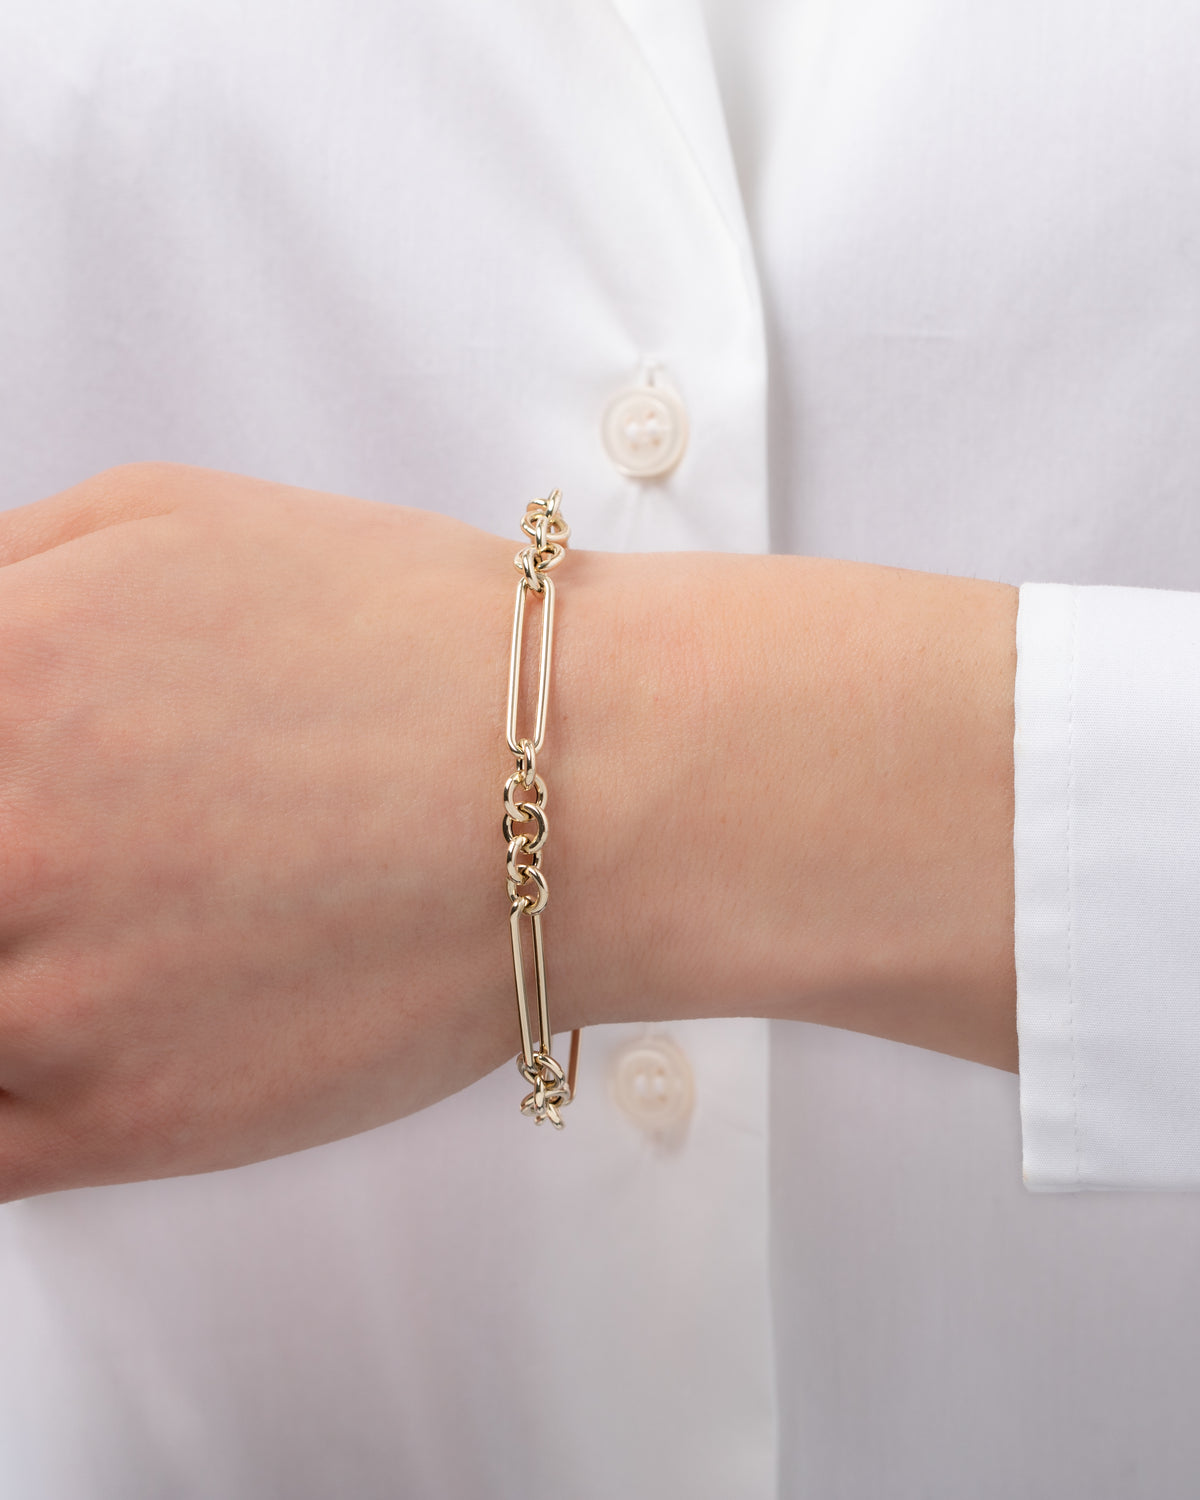 14K Gold Elongated Paper Clip Chain Bracelet